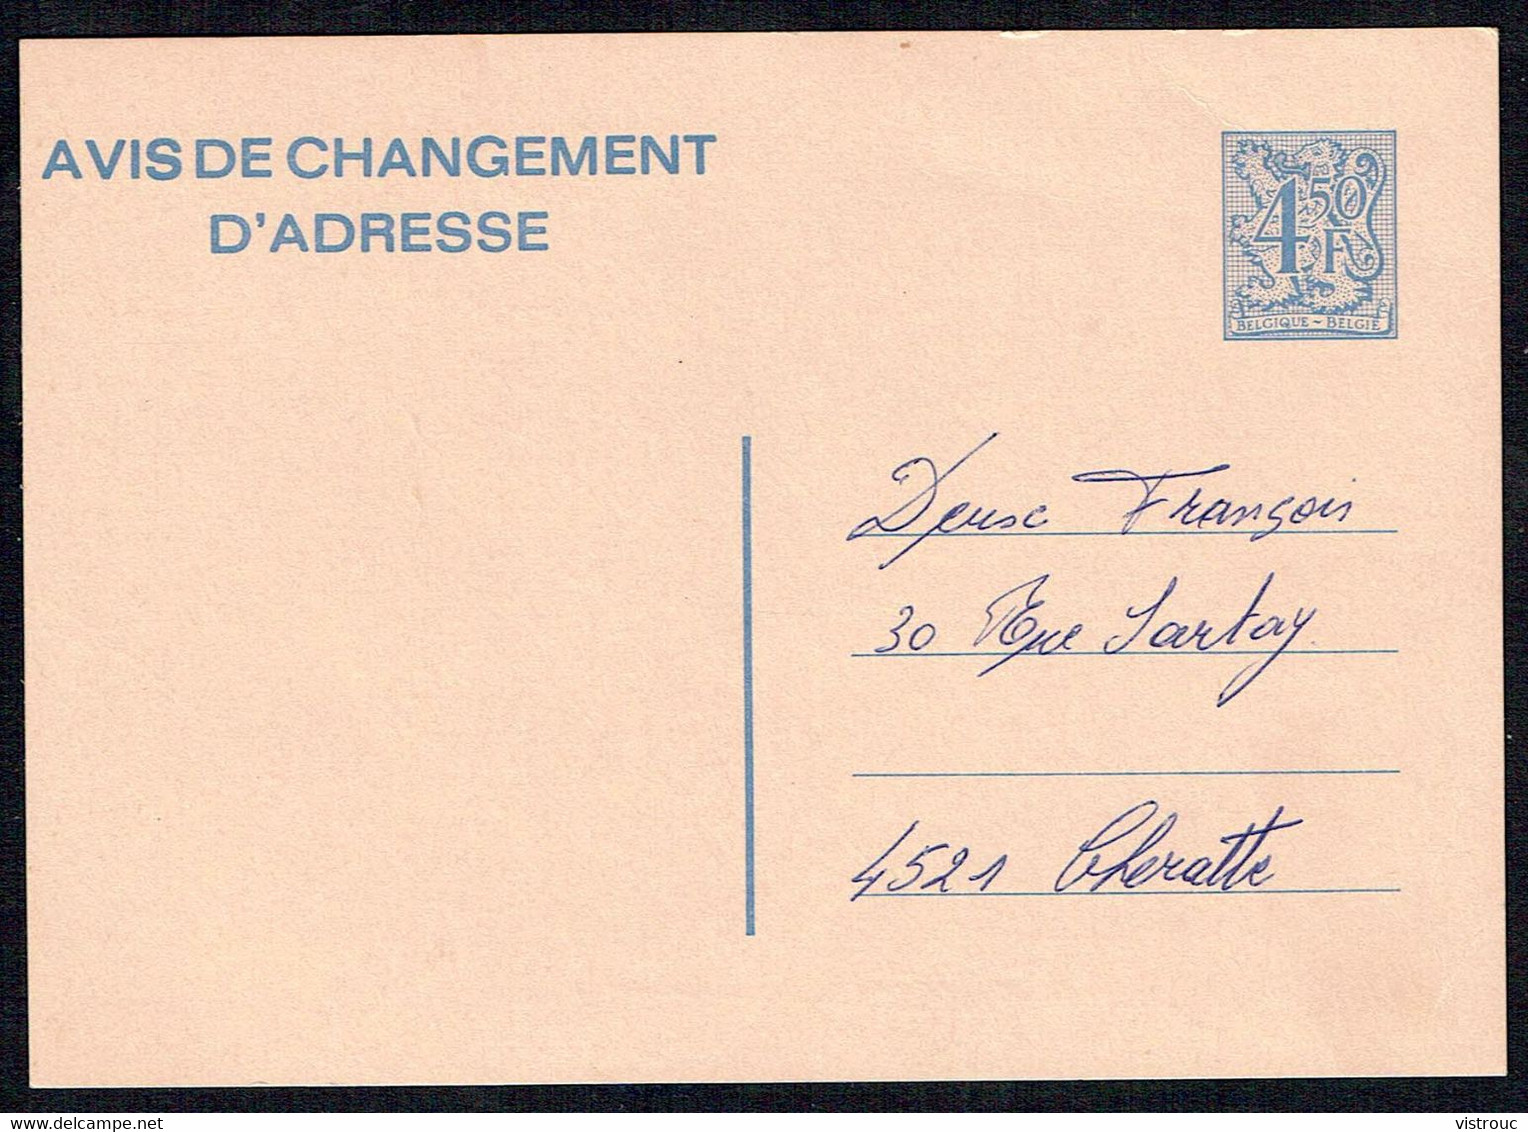 Changement D'adresse N° 21 III F (texte Français) - Circulé - Circulated - Gelaufen - 1978. - Avis Changement Adresse